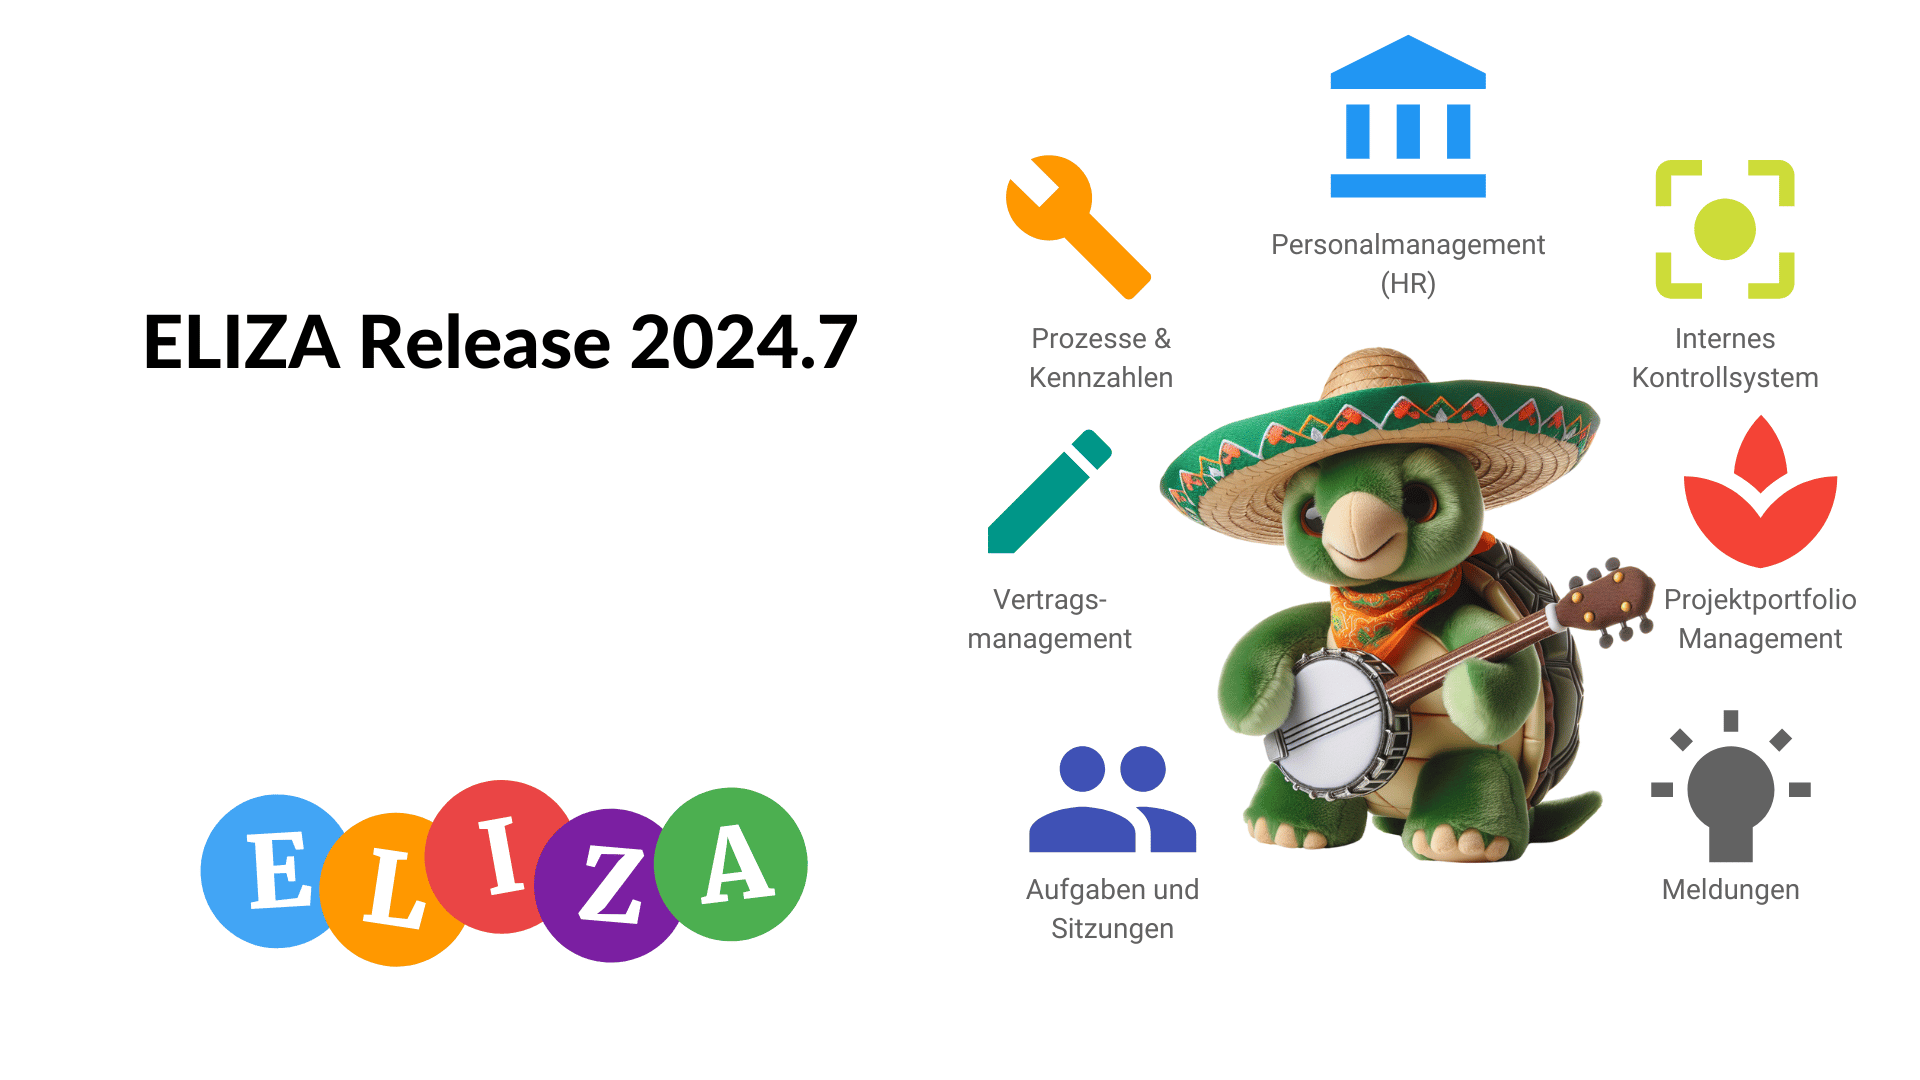 ELIZA Release 2024.7: Verbesserte Benachrichtigungsoptionen und Onboarding für neue Benutzer:innen